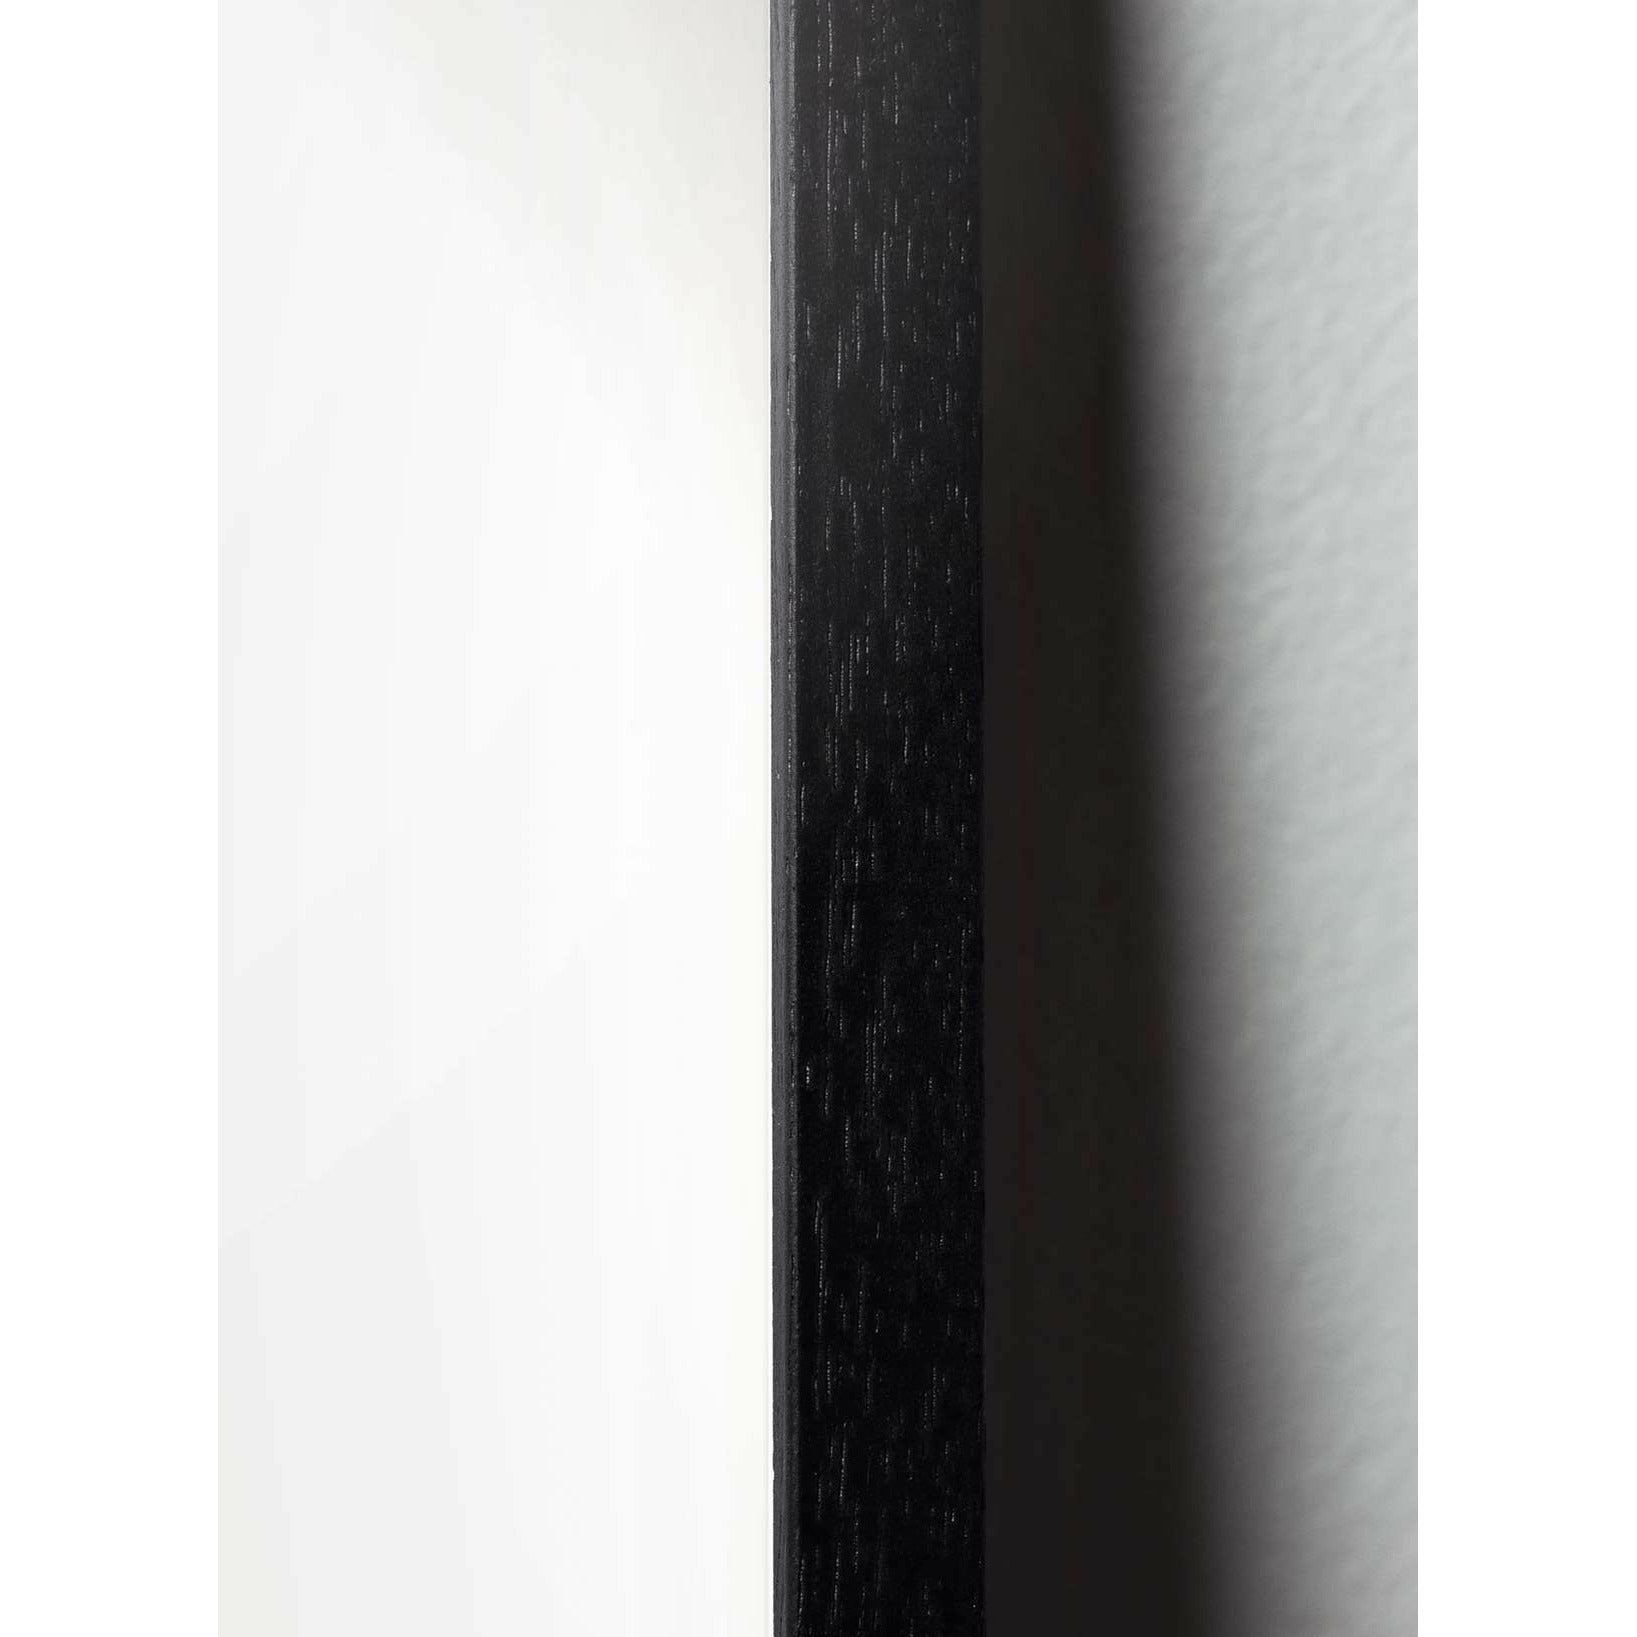 Plakát ikon designu mozků, rám vyrobený z černého lakovaného dřeva 50x70 cm, šedá